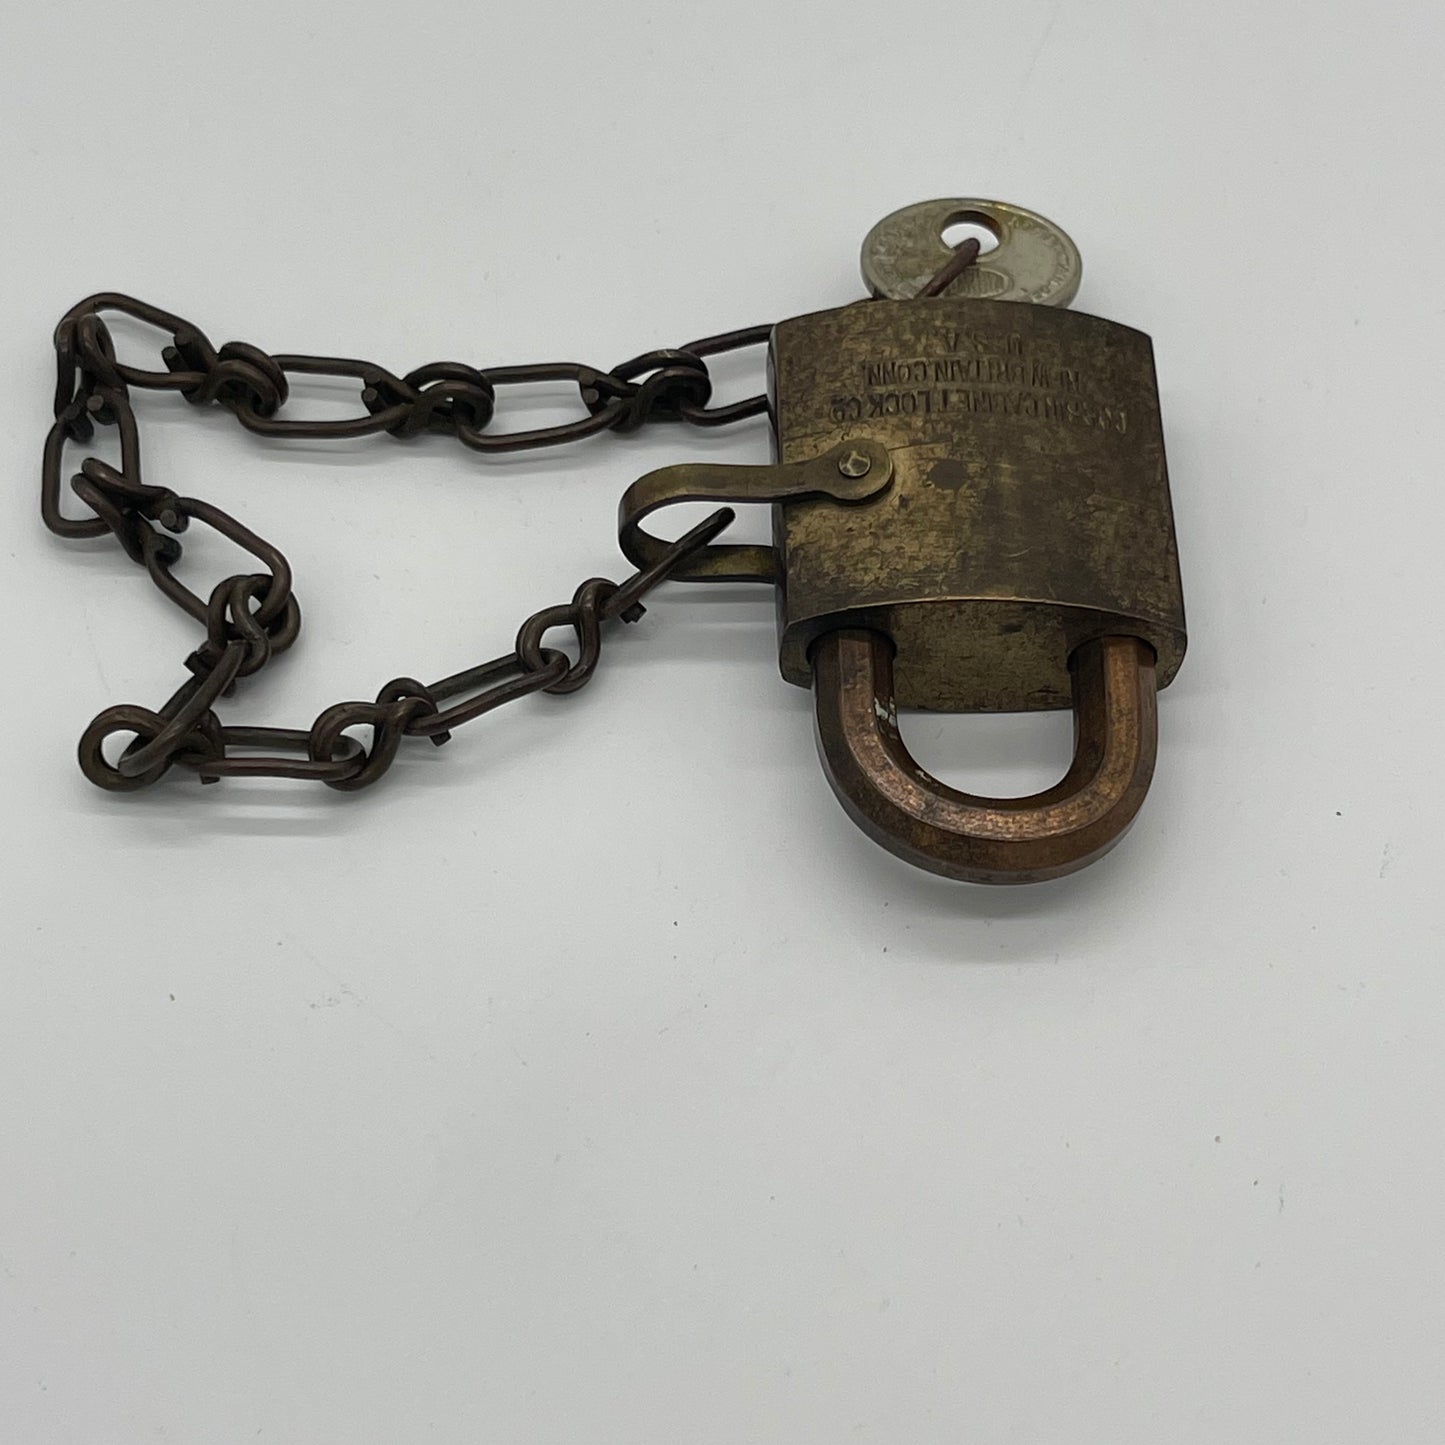 Vintage US Navy Lock with Key (Item Number 0014)